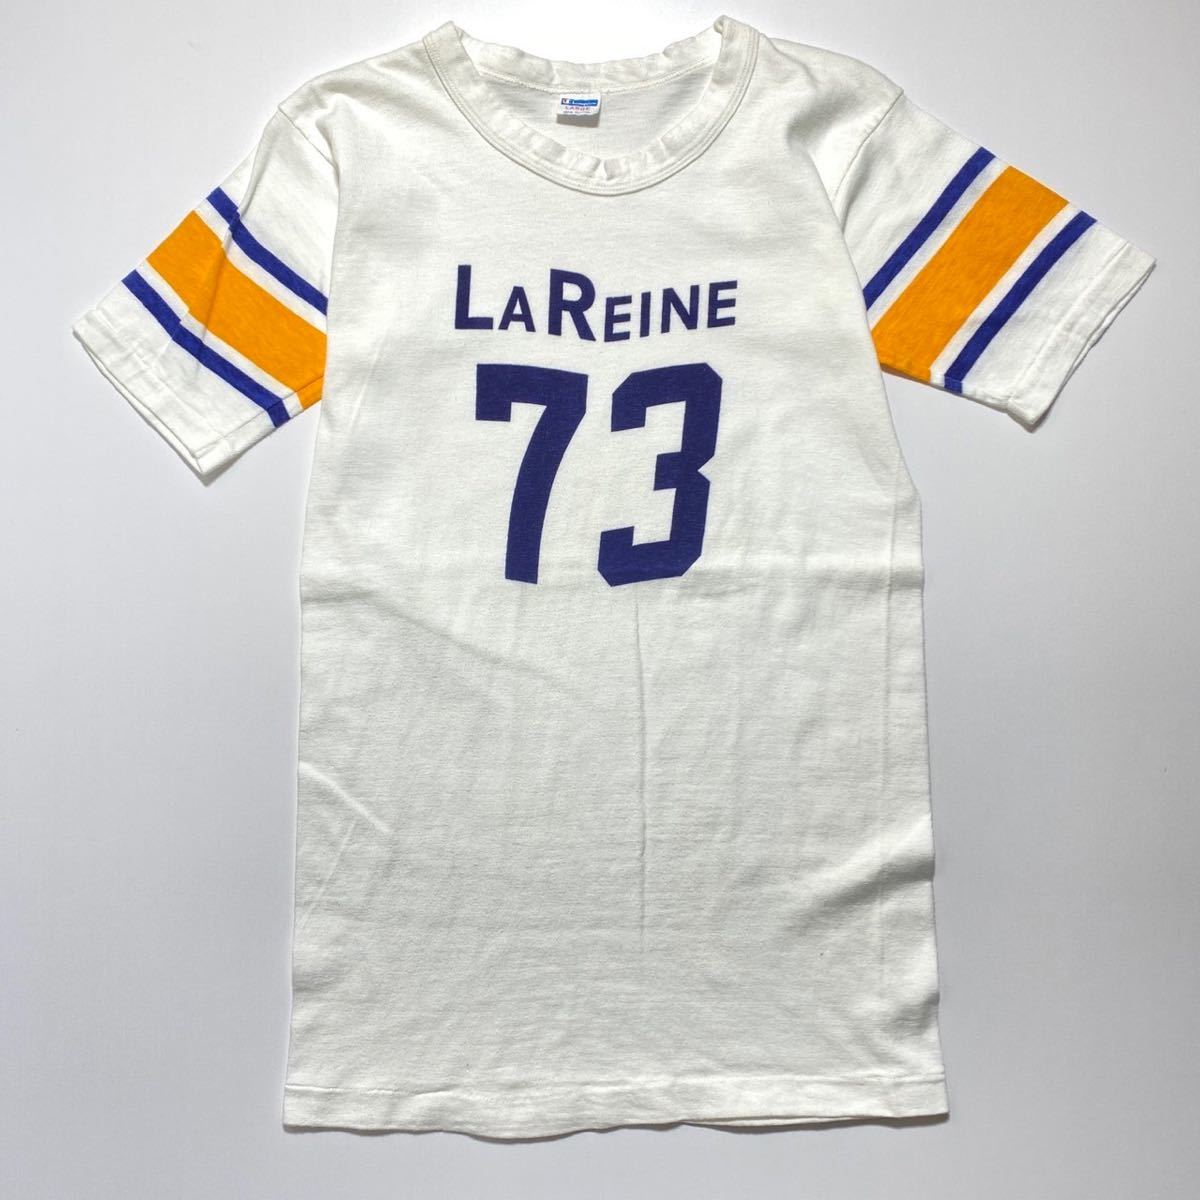 【L】1970s Vintage Champion LA REINE 73 Football Tee 1970年代 ヴィンテージ チャンピオン フットボール Tシャツ バータグ G2089